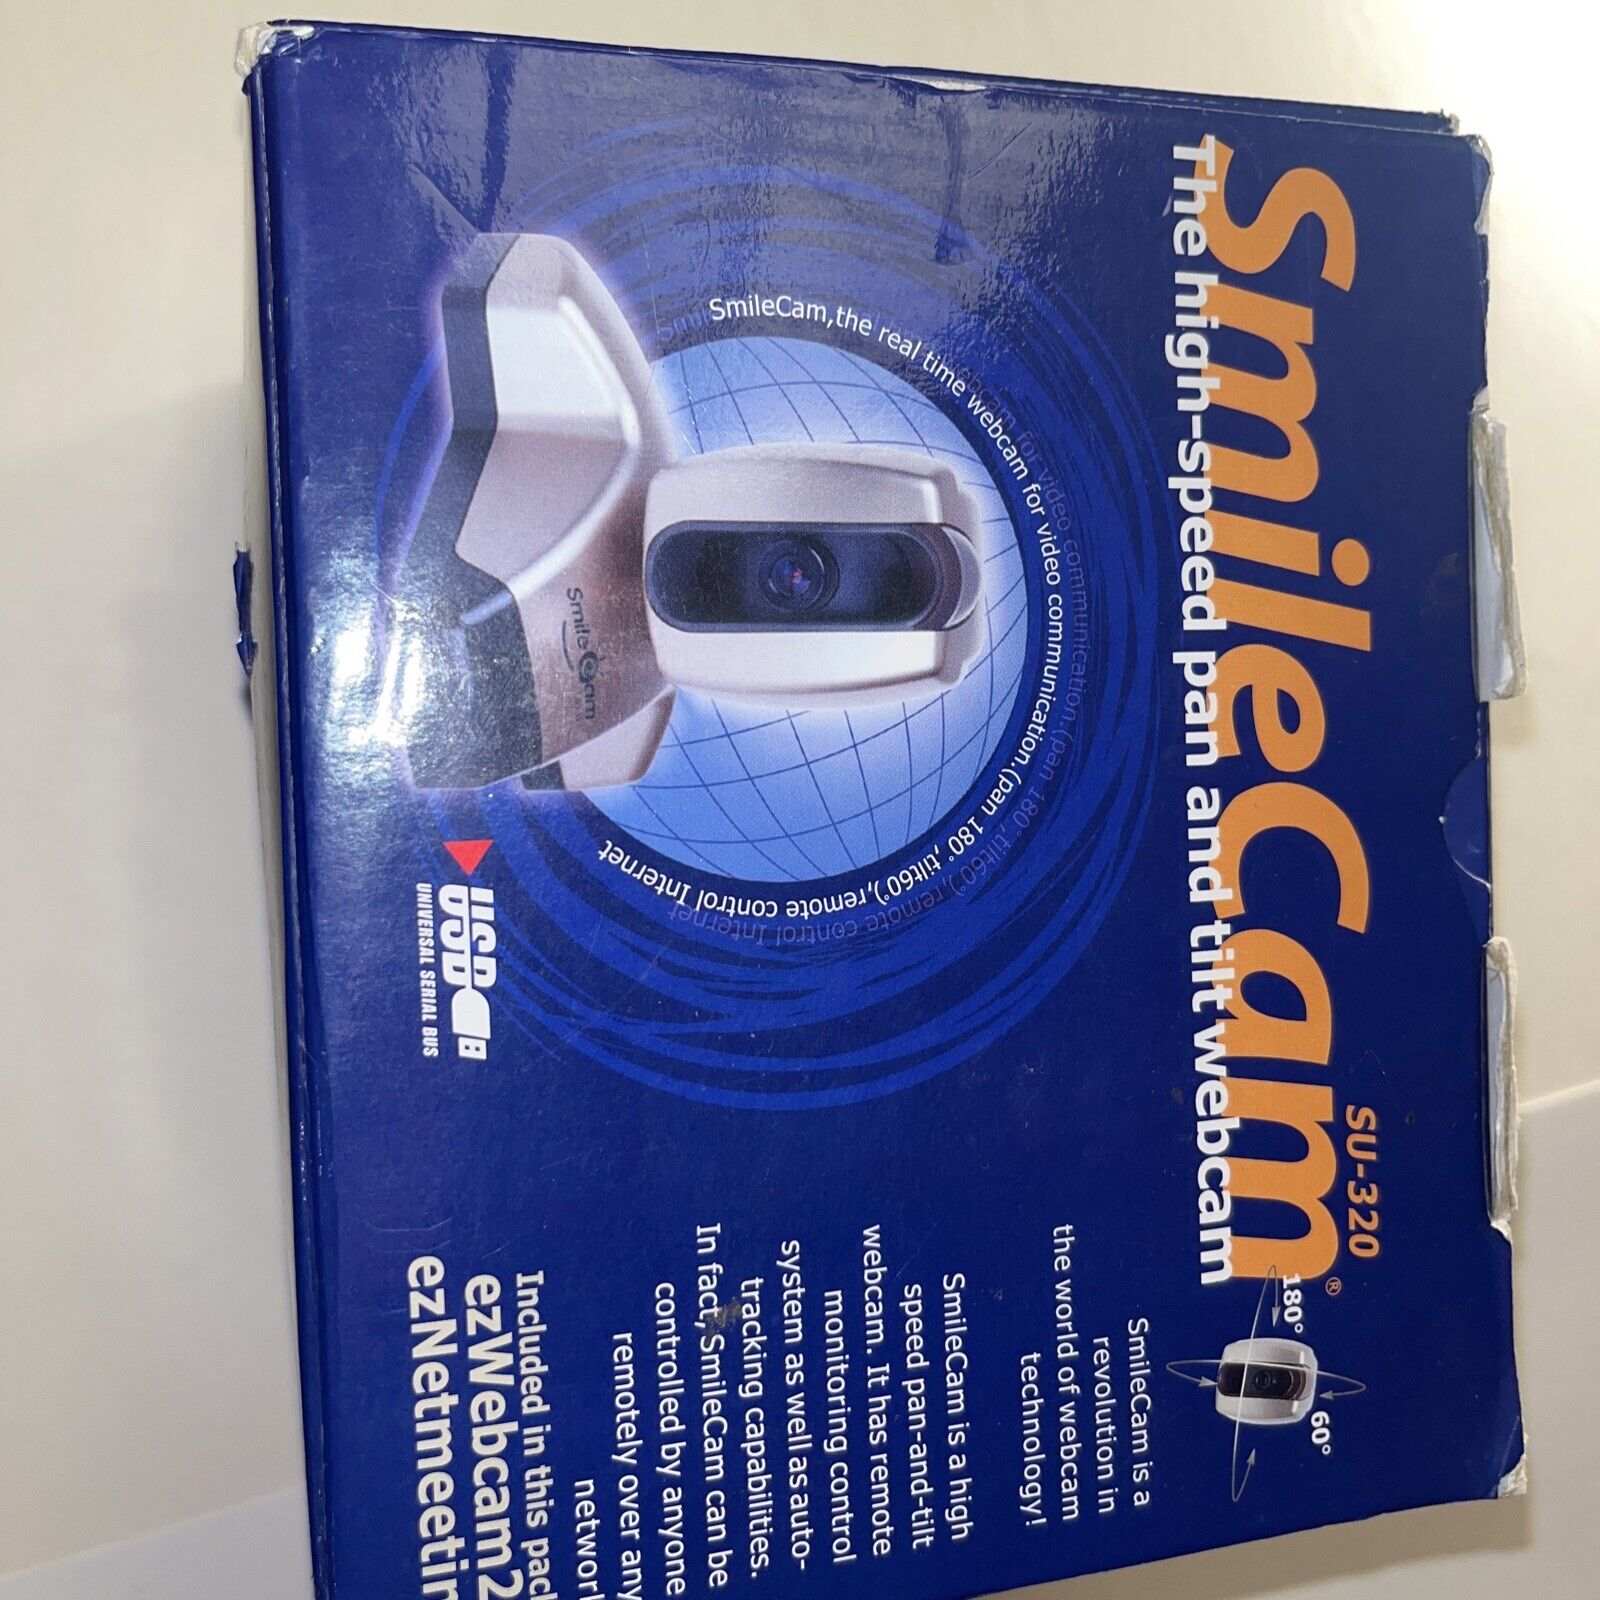 VERY RARE- SmileCam Webcam SU-320 W/SmileCam Software WITH ORIGINAL BOX